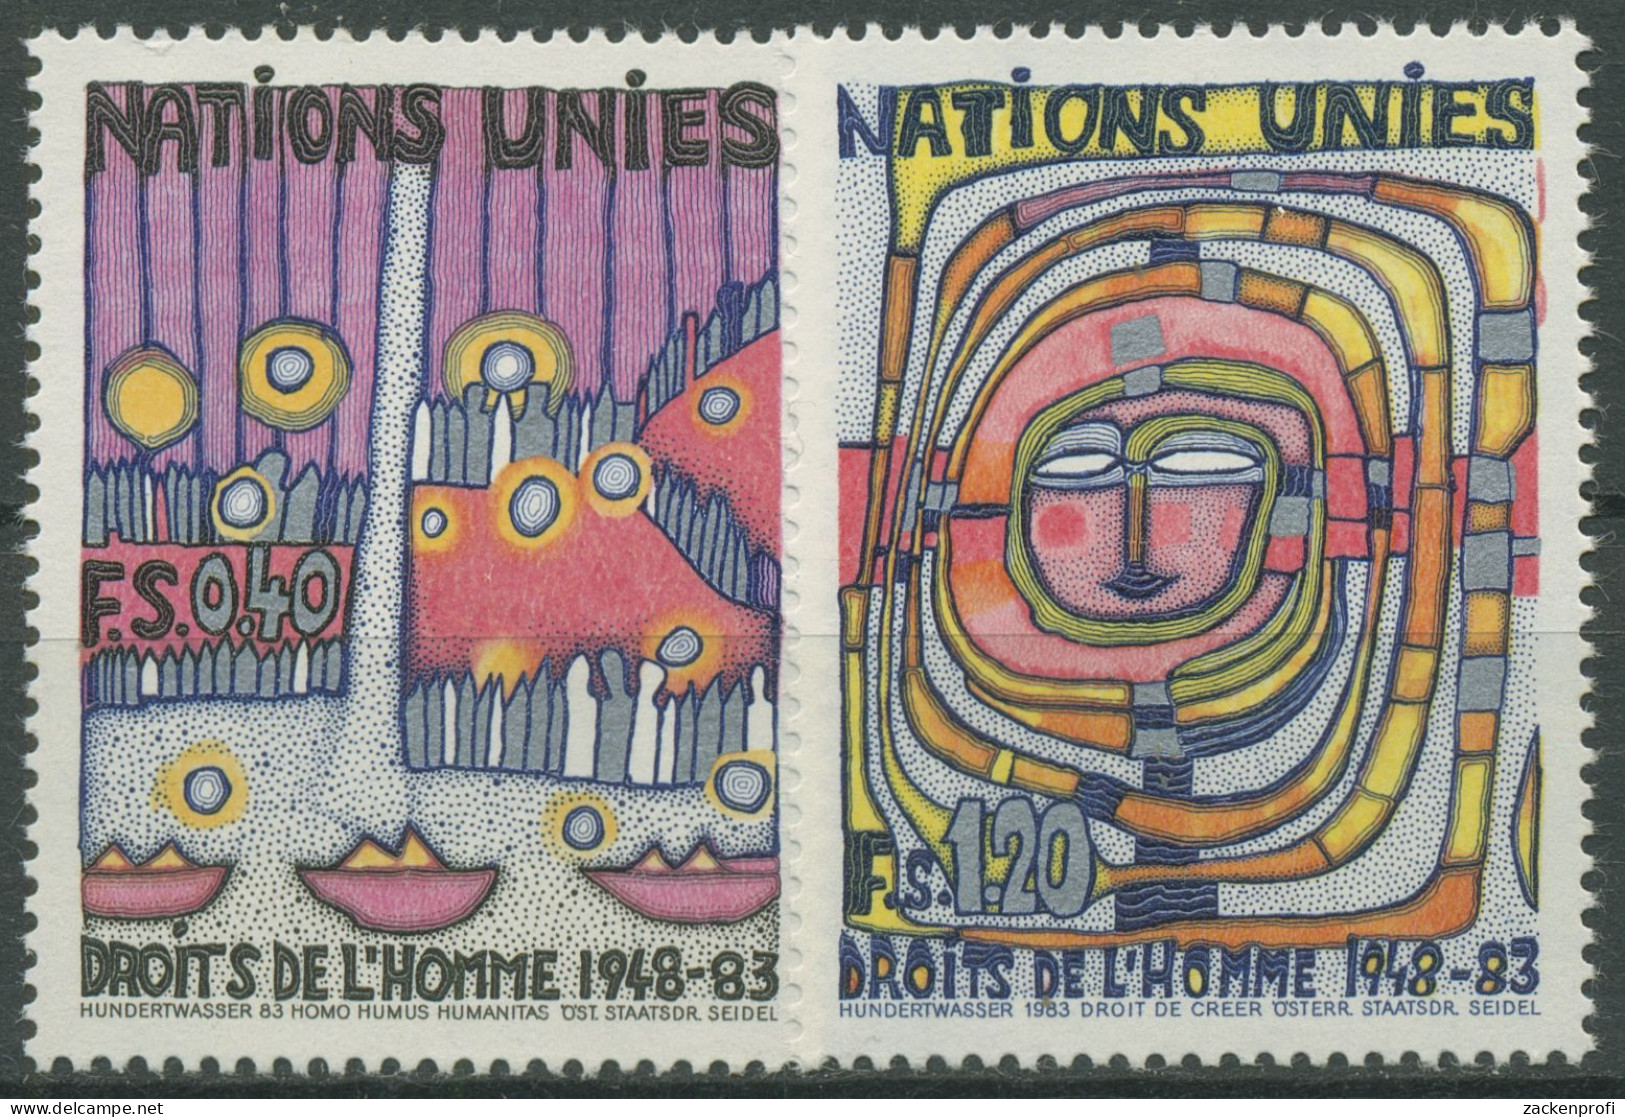 UNO Genf 1983 Erklärung Der Menschrechte Gemälde Hundertwasser 117/18 Postfrisch - Nuovi